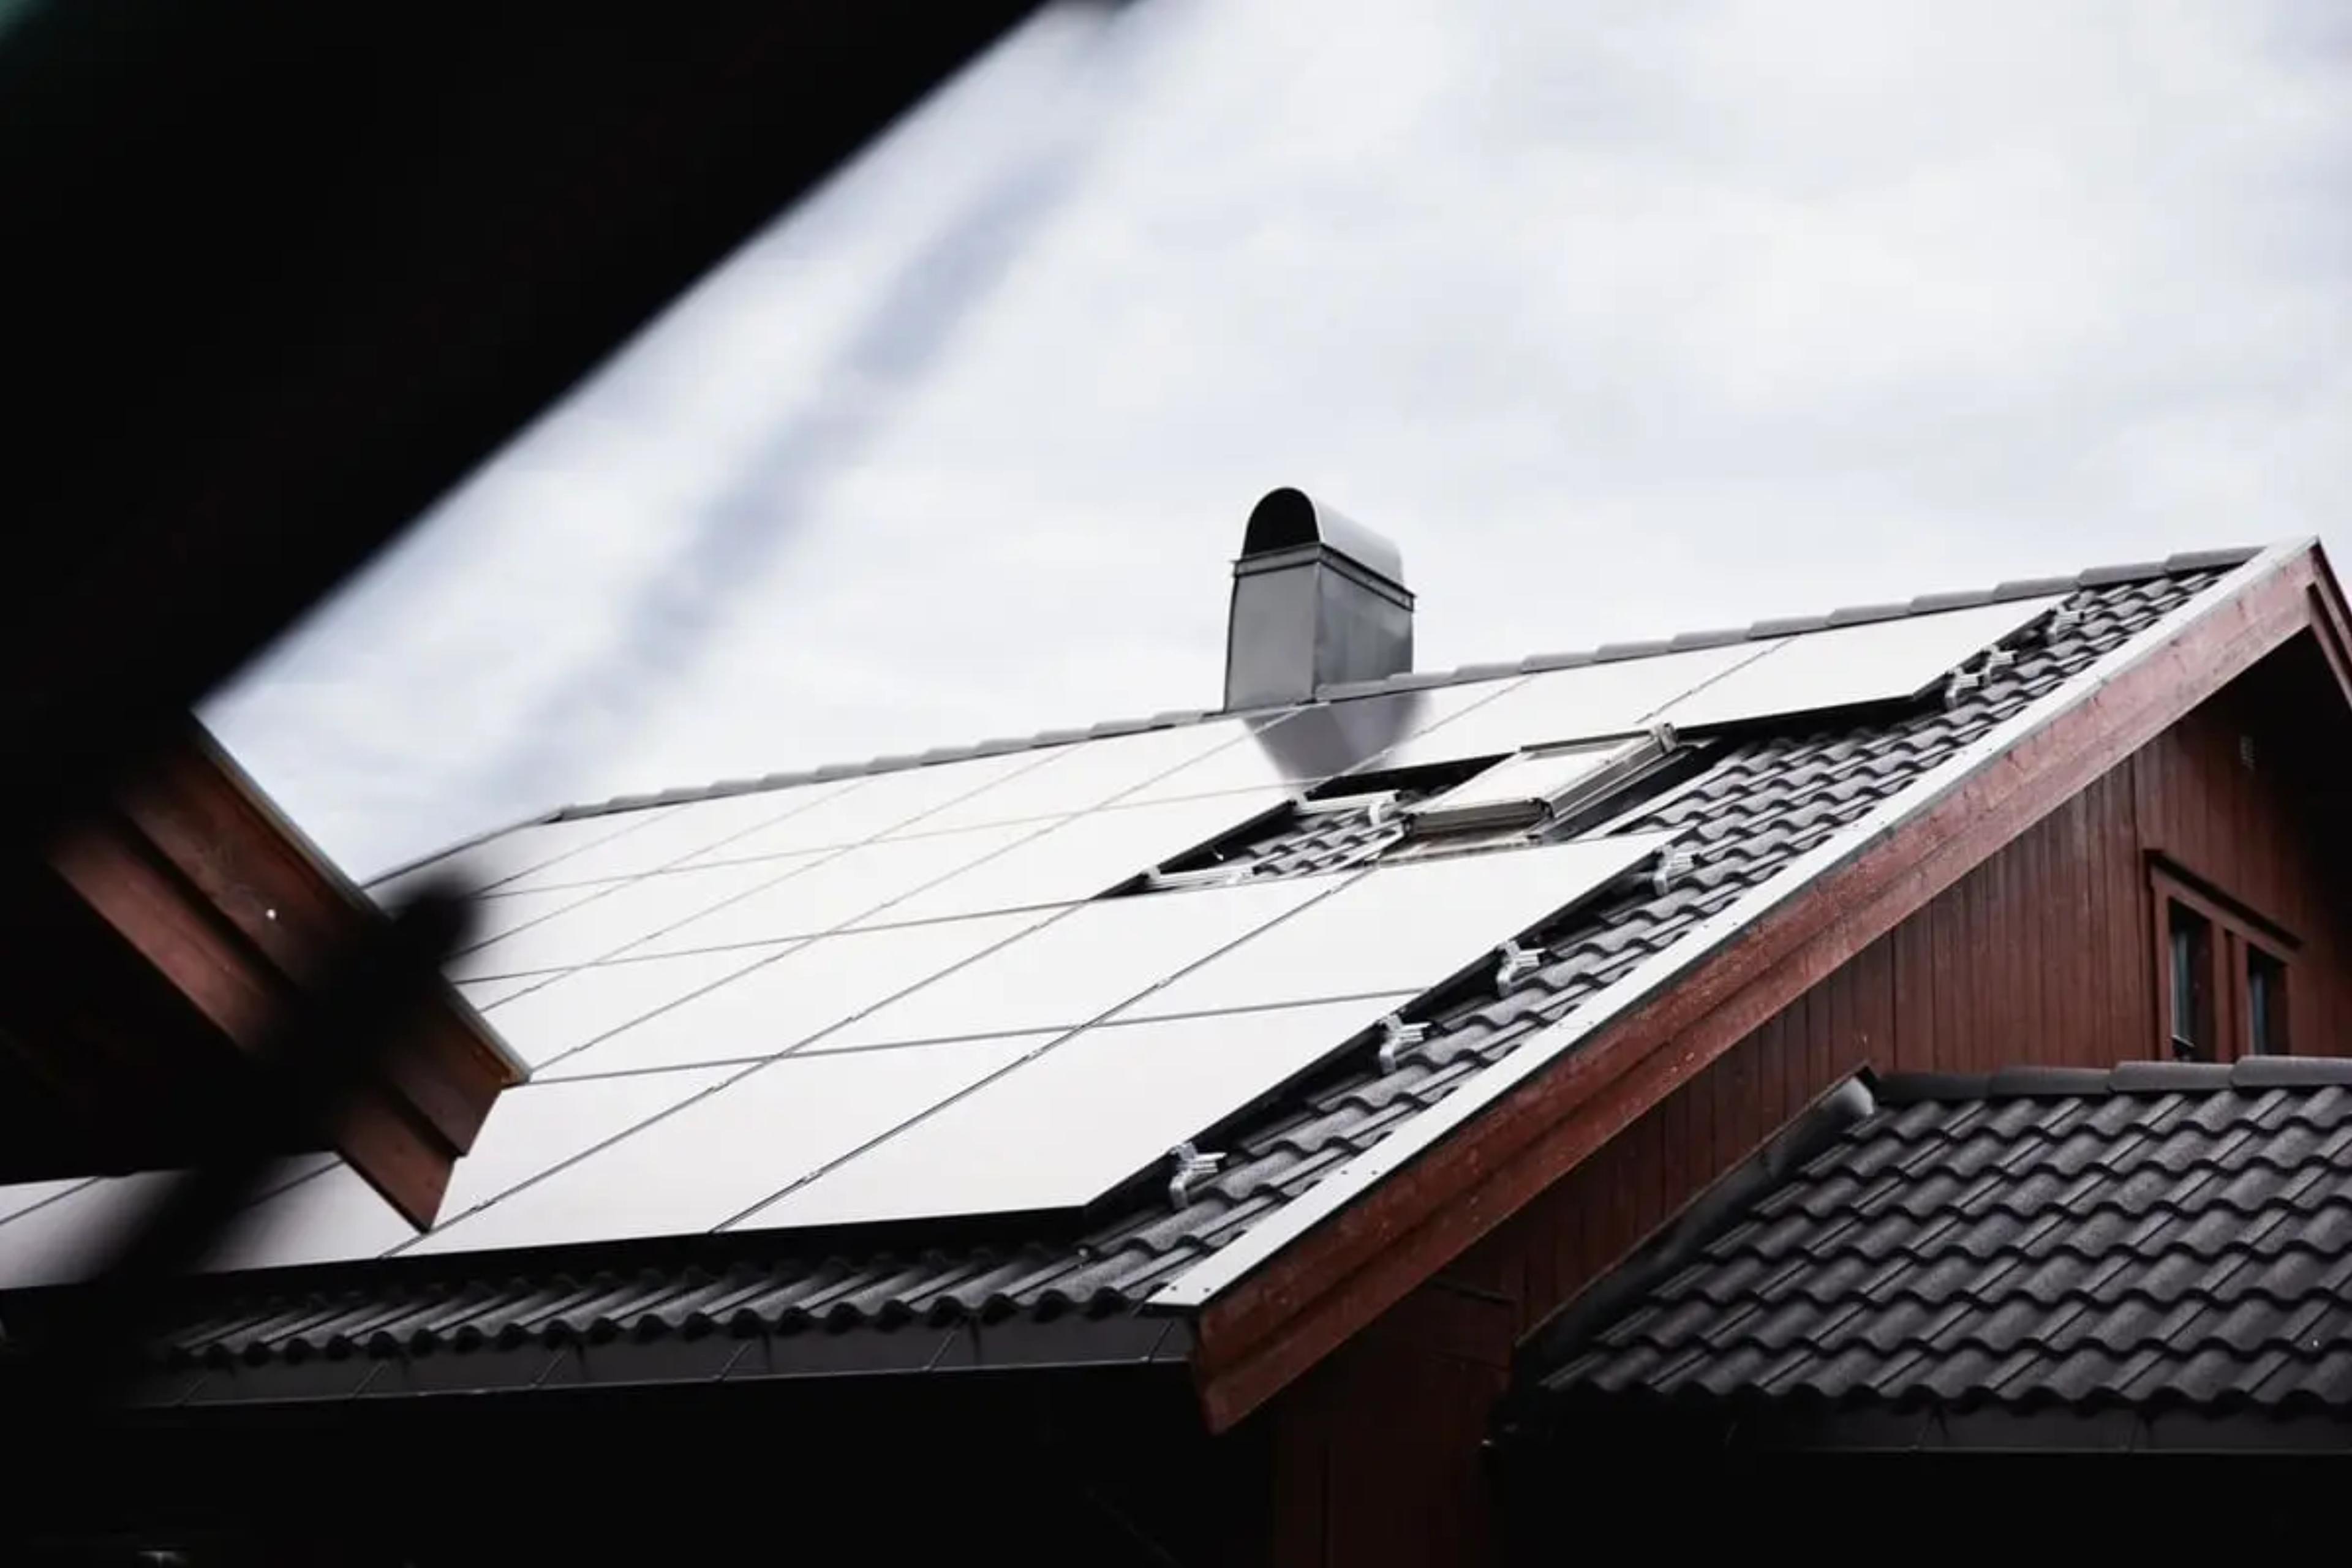 närbild på hustak som har solpaneler installerade på sig